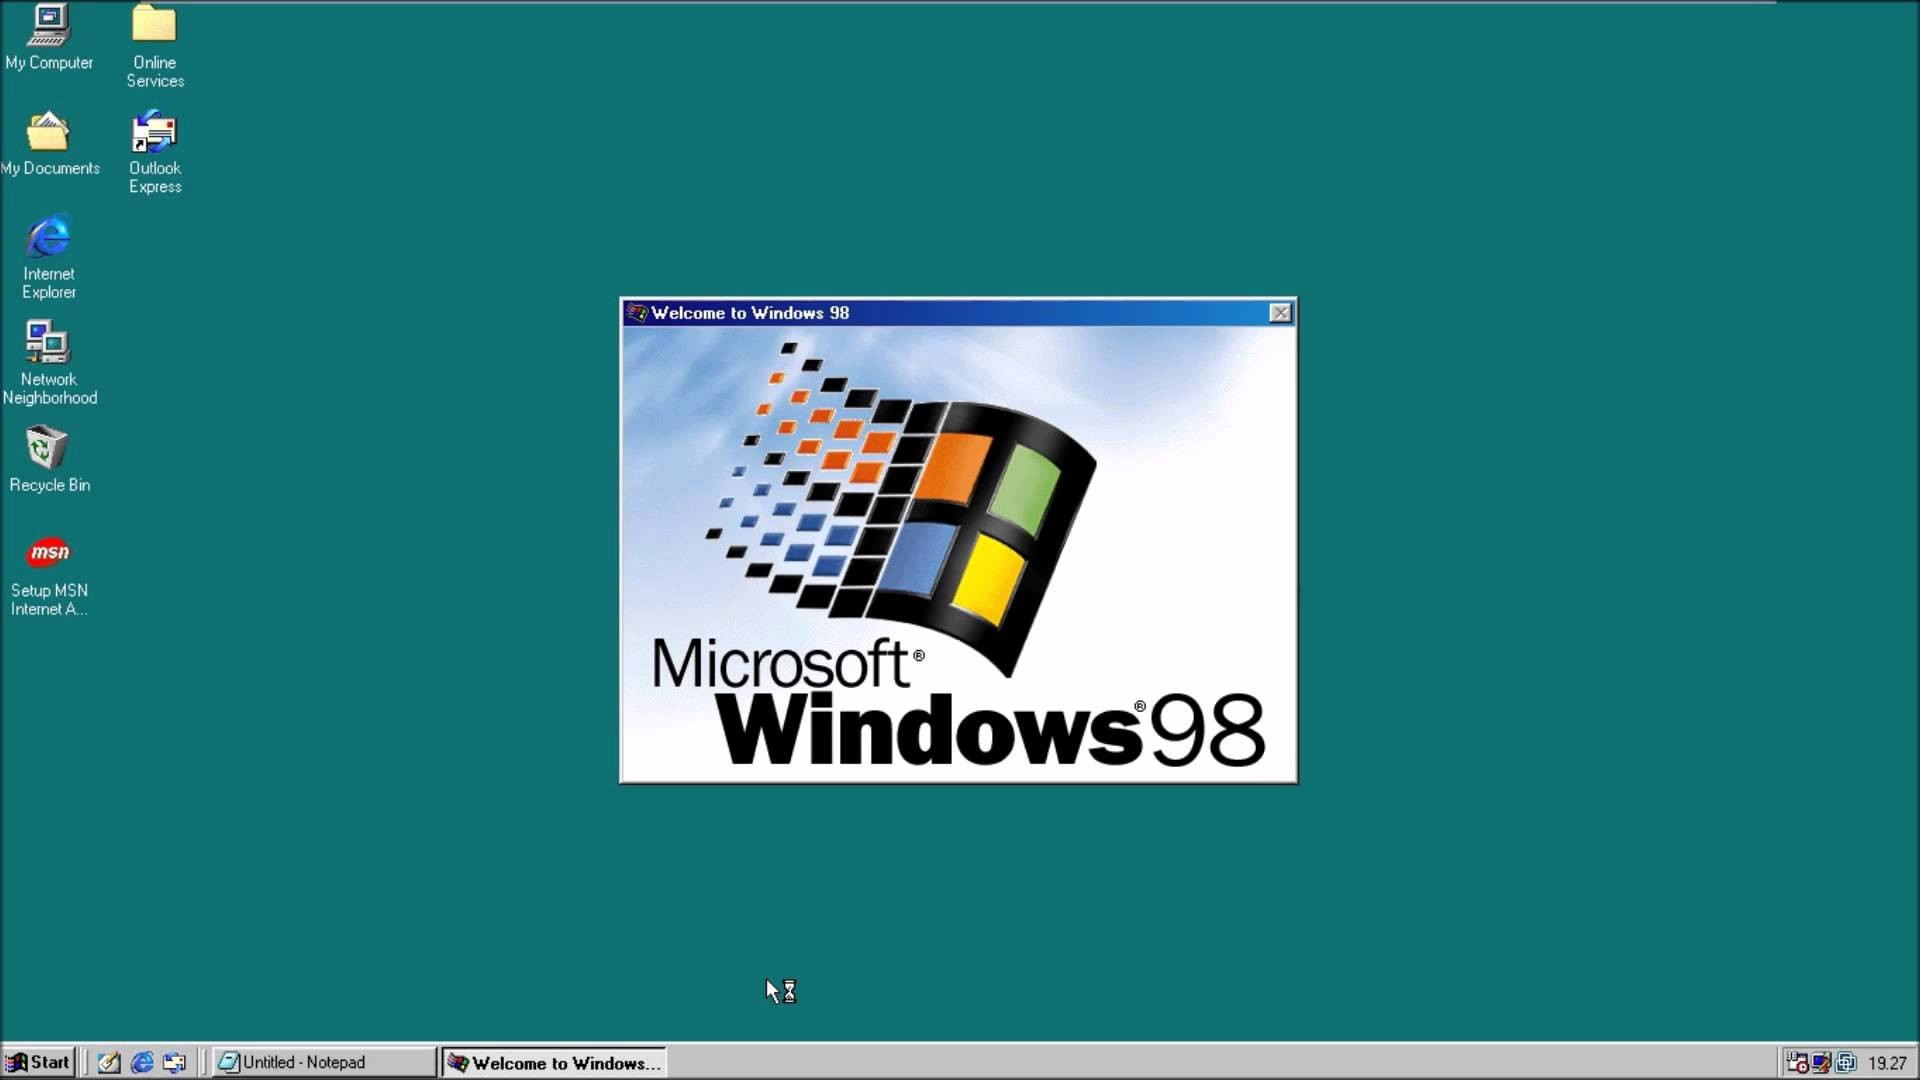 1920x1080 Windows 98 HD wallpaper by festivus31 on DeviantArt ...